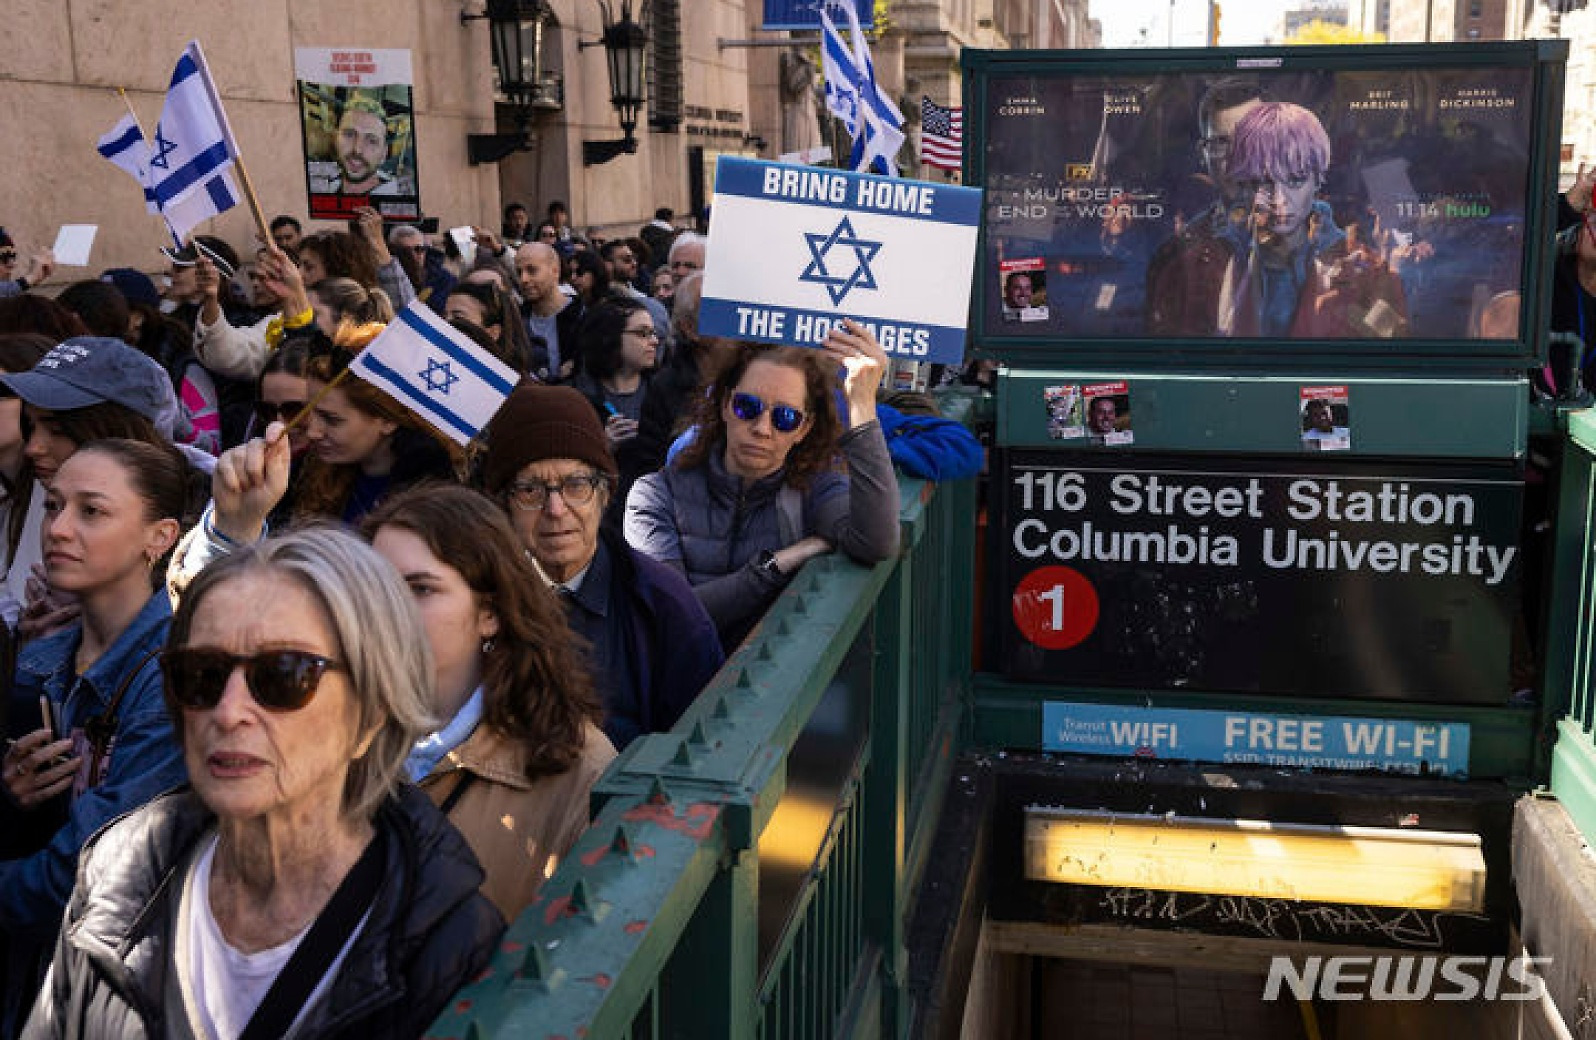 뉴욕서 인질 석방 촉구하는 친이스라엘 시위대